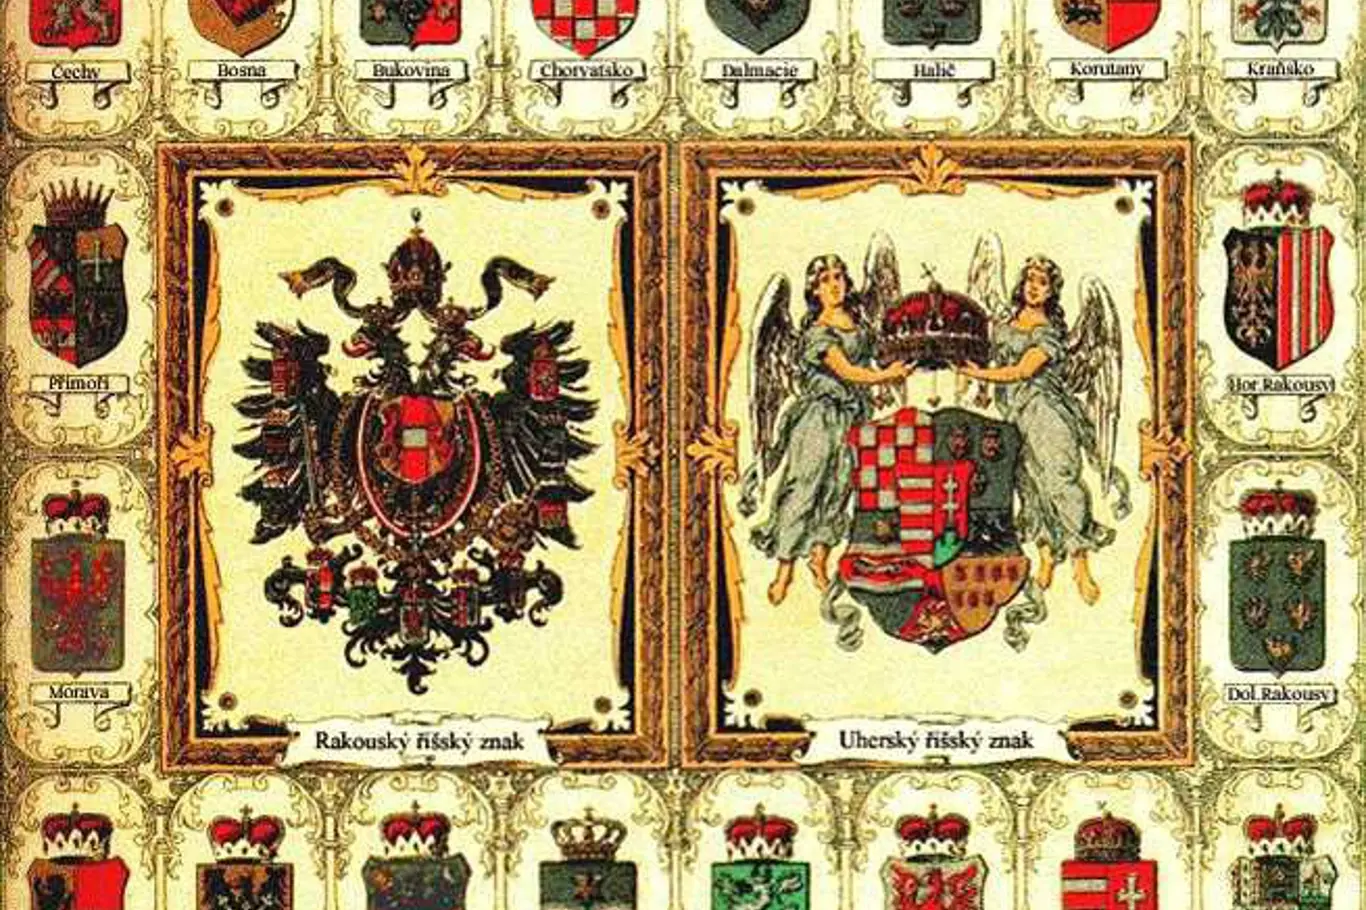 České království i Morava zůstaly po prohraném zápase o fundamentální články dál řadovými korunními zeměmi monarchie. Výsadní postavení mělo kromě Rakouska jen Uhersko